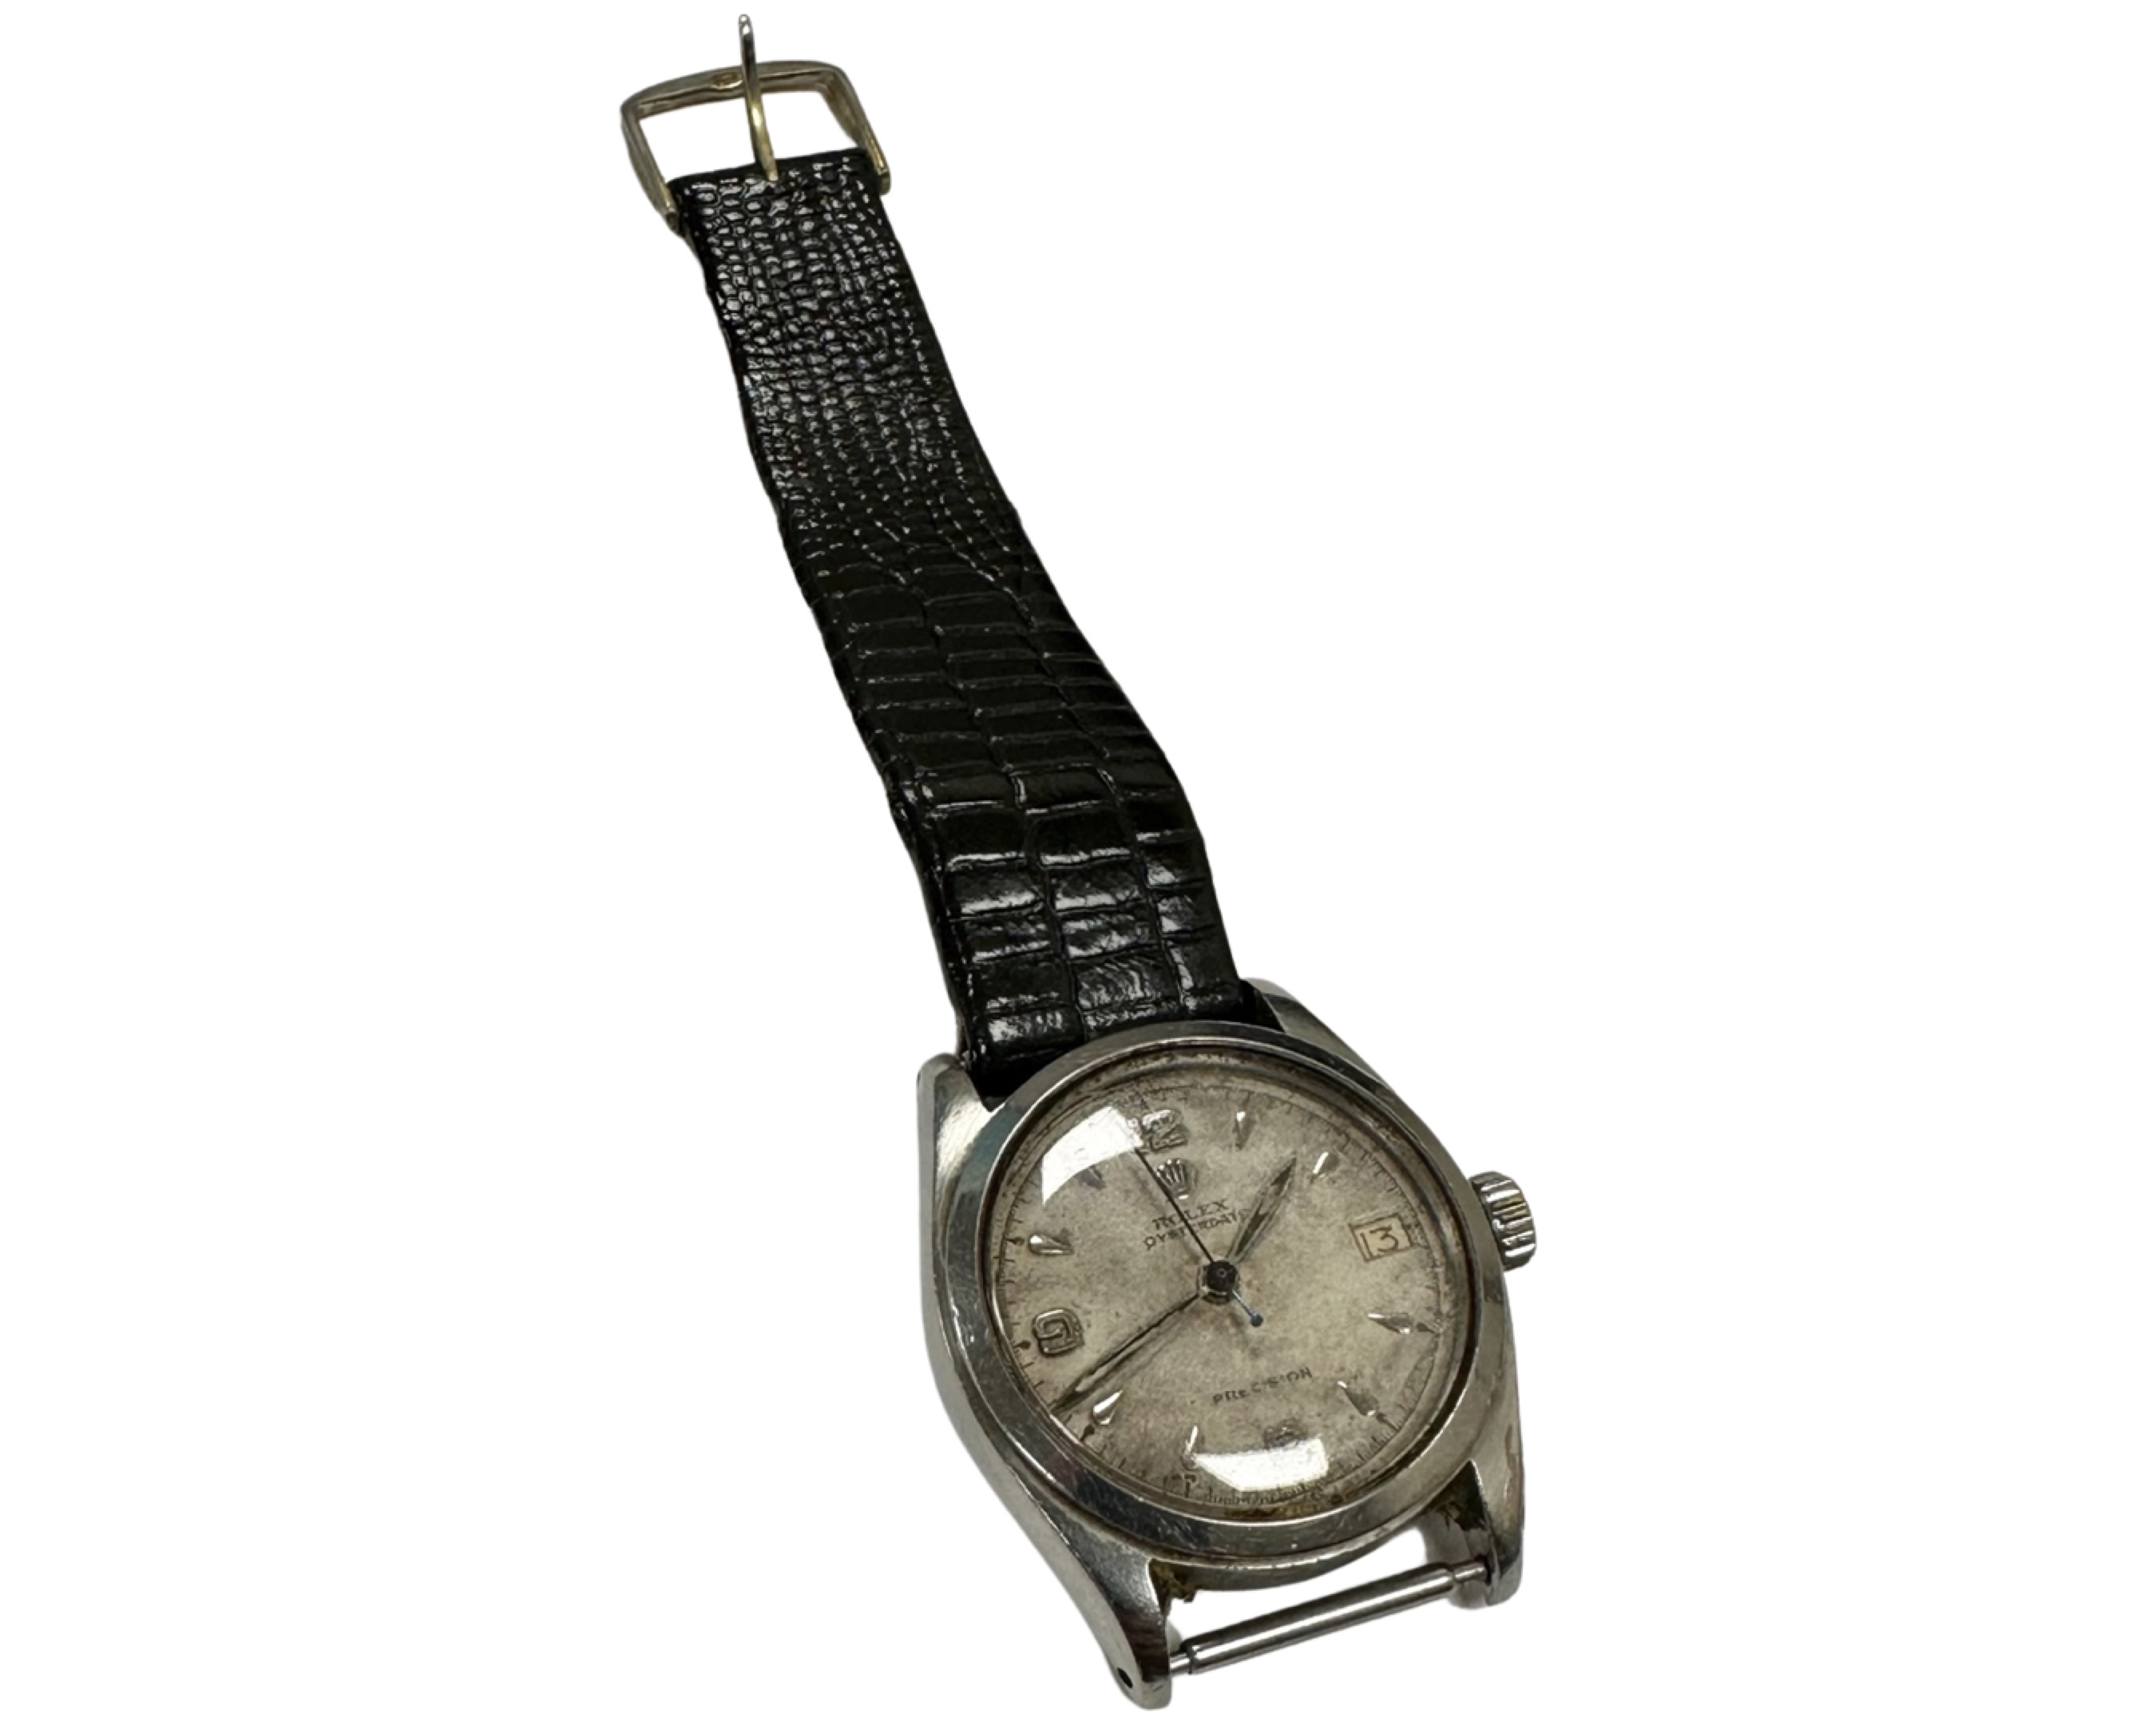 A vintage Gentleman's Rolex Oysterdate stainless steel wrist watch, model 6066,